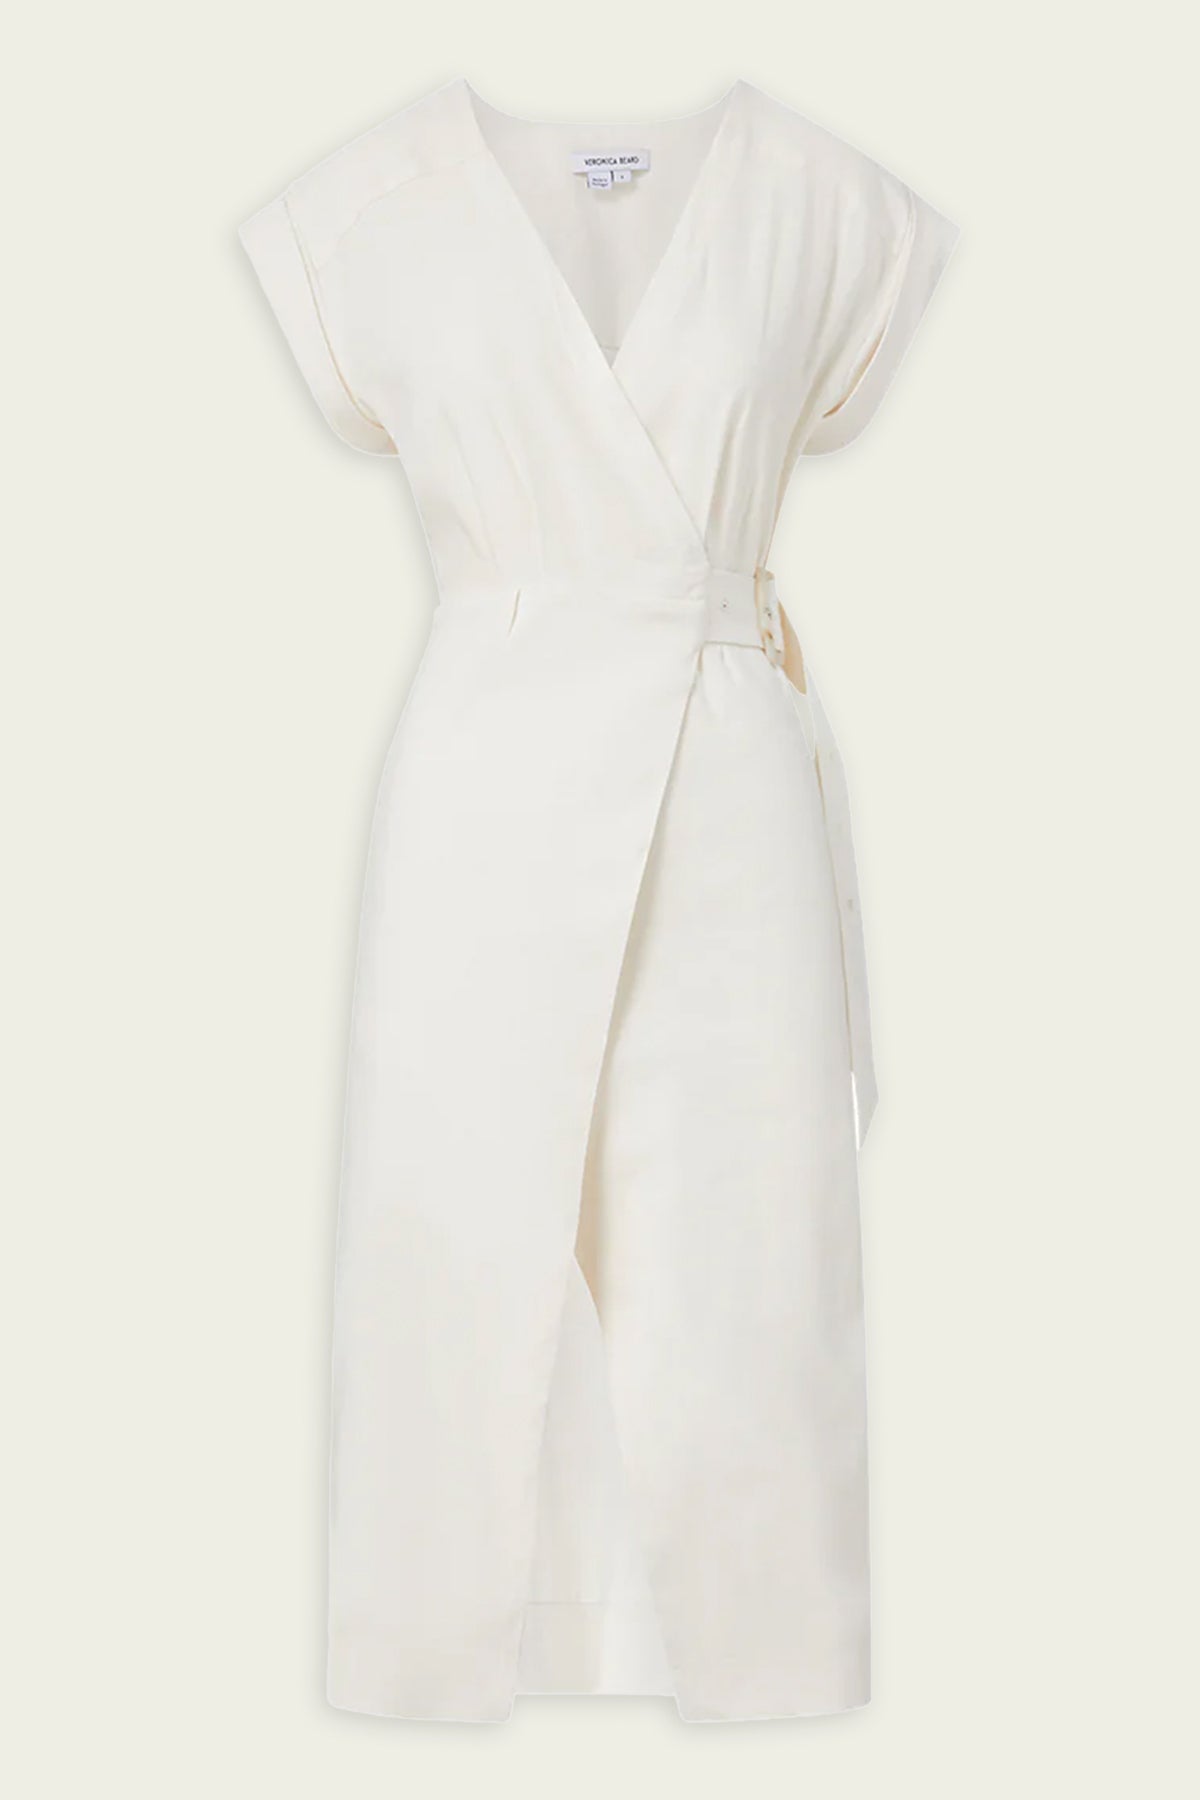 Octavia Stretch-Linen Wrap Dress in Off-White - shop-olivia.com